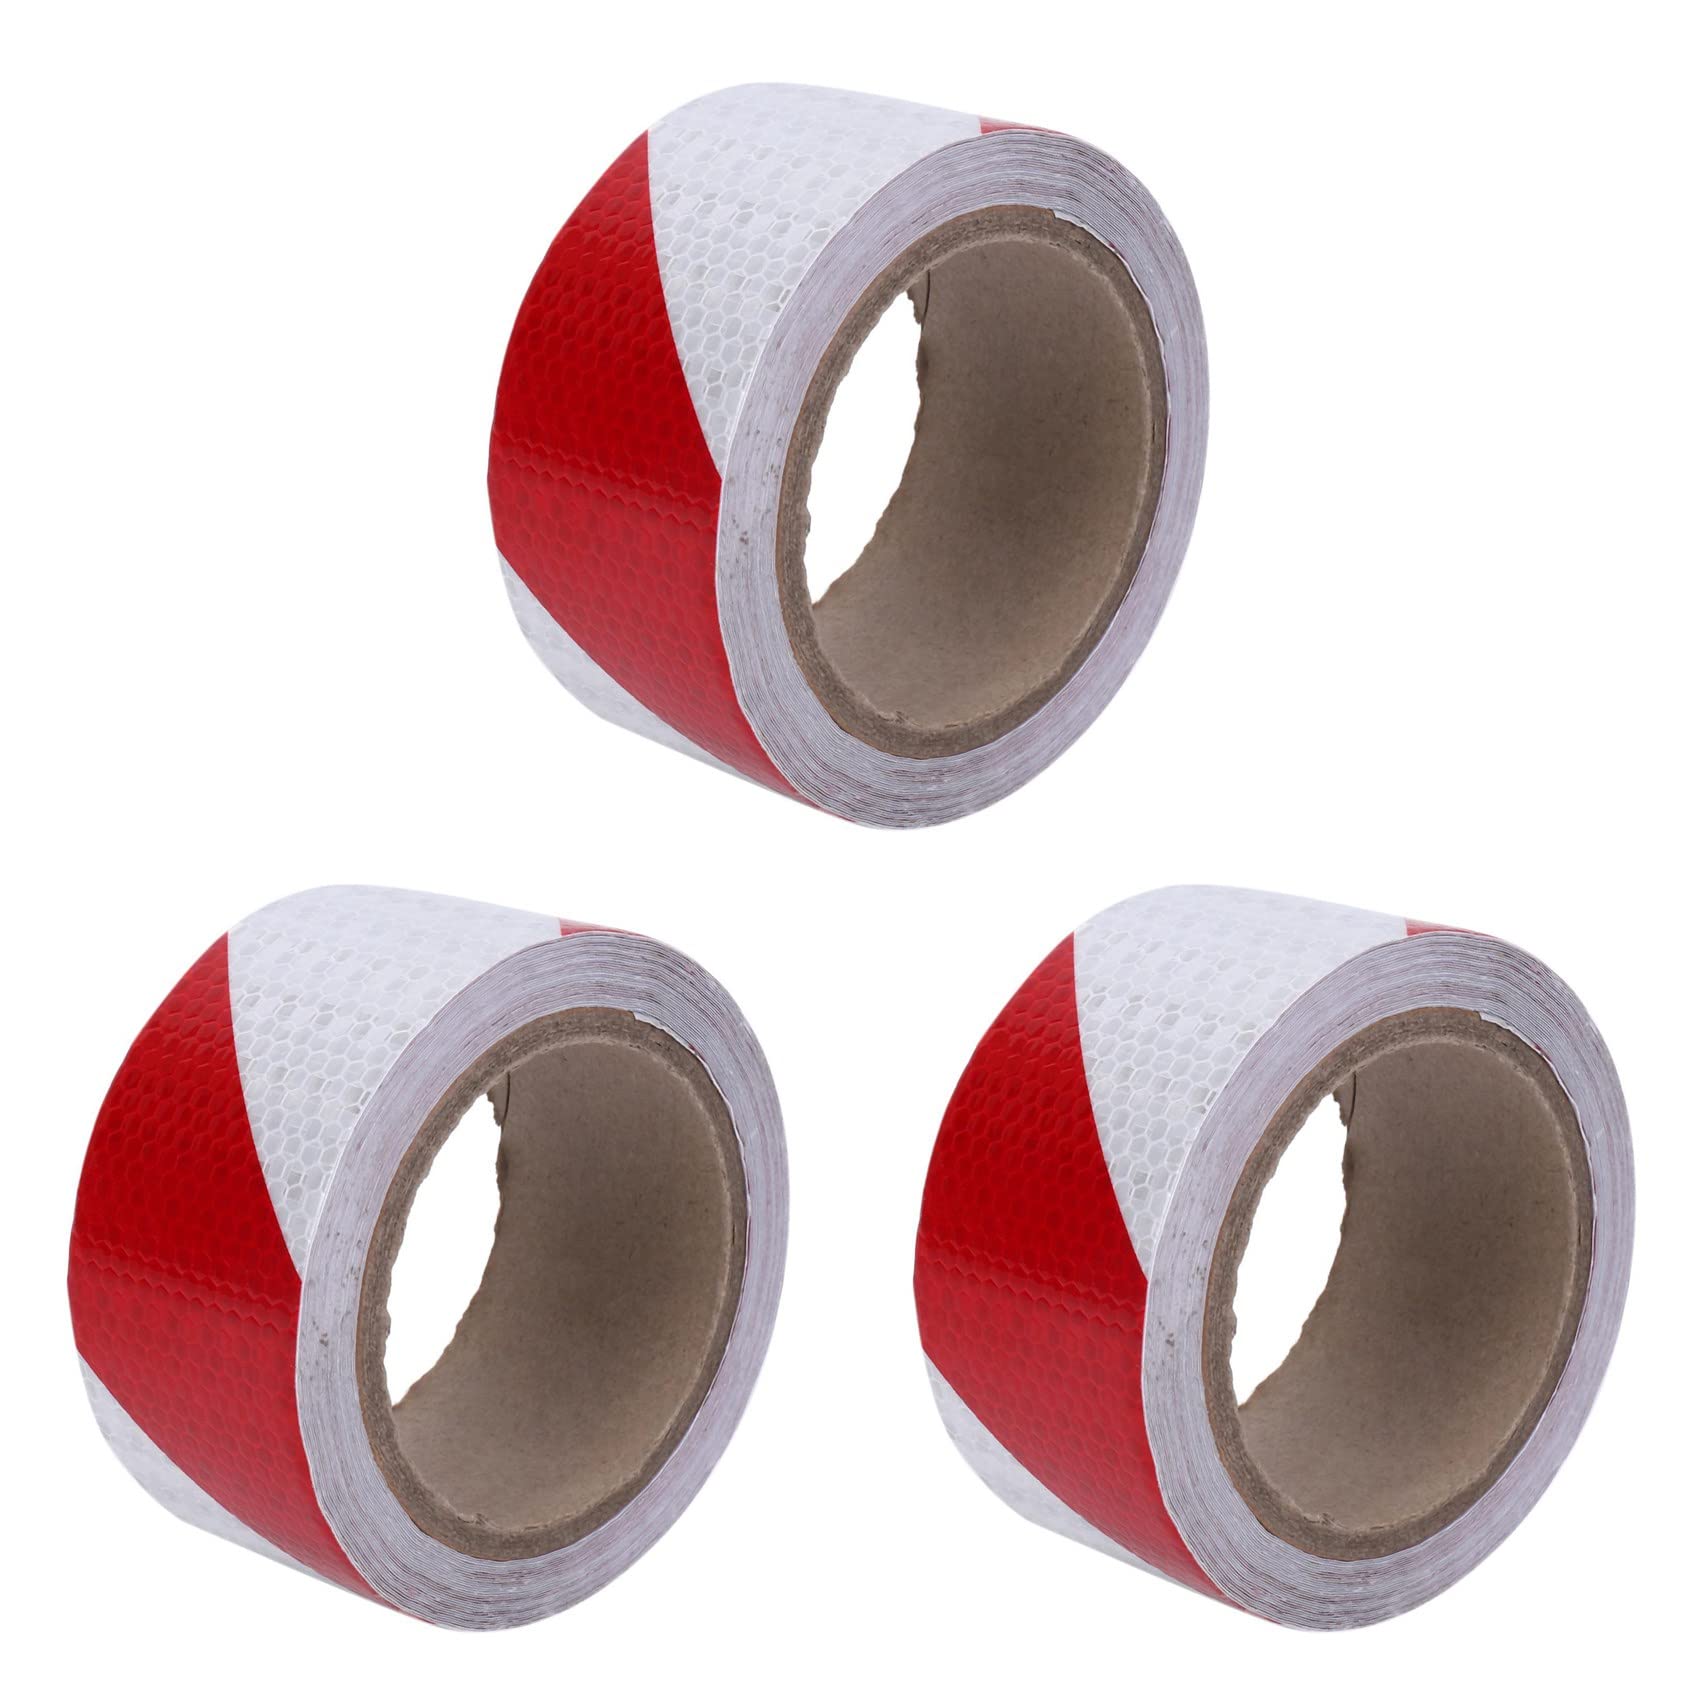 Trjgtas 3 Stücke 10m x 5cm Sicherheitswarnband Reflexband Selbstklebeband Reflexstreifen Verkehrsreflektierende Aufkleber Farbe: Rot + Weiß von Trjgtas